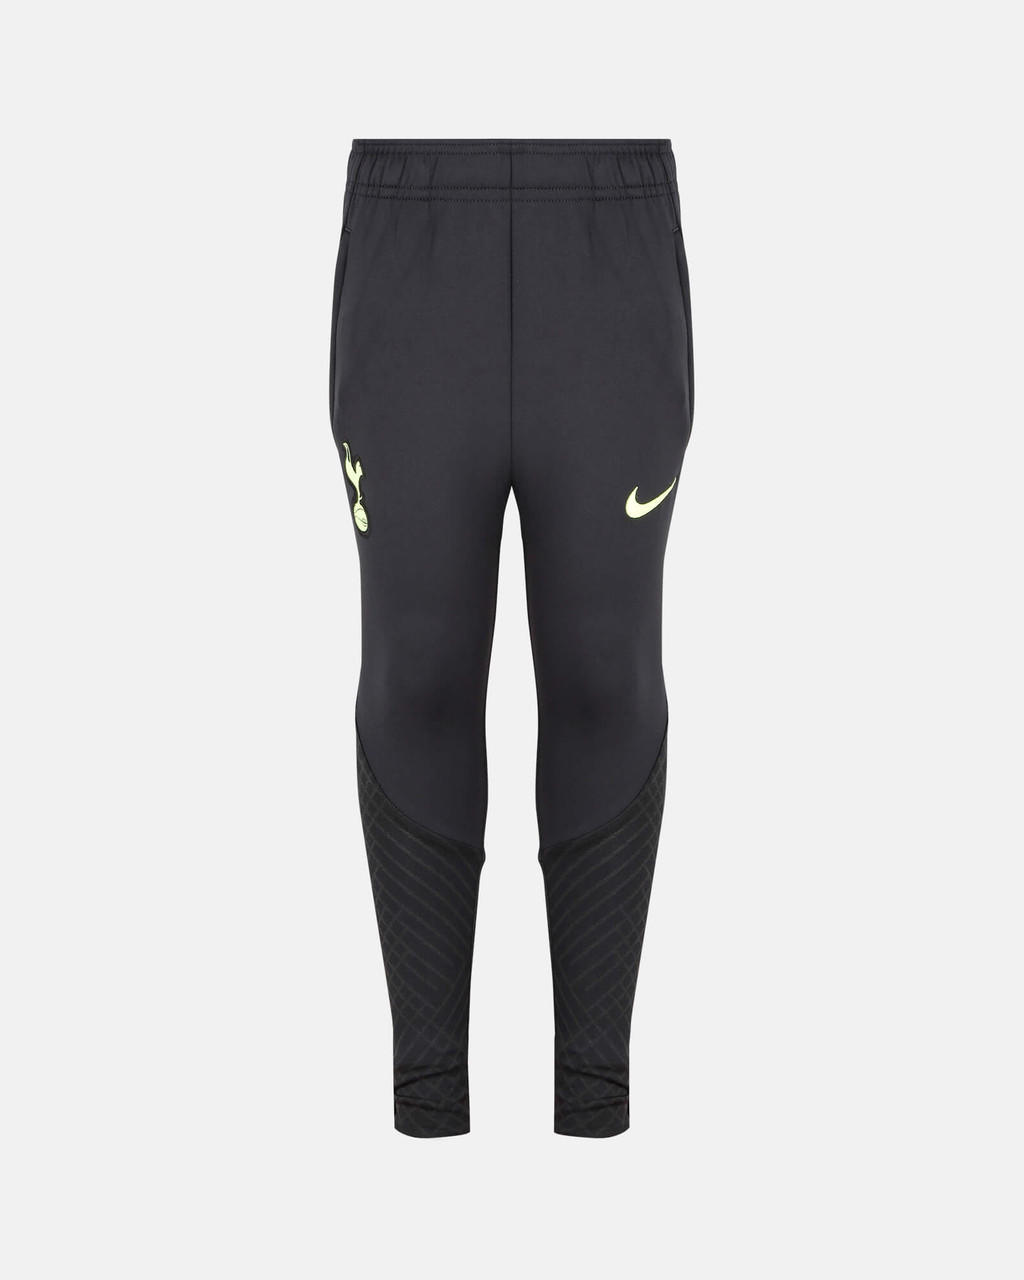 Nike Spurs Nike Youth Training Pants 2022/23 